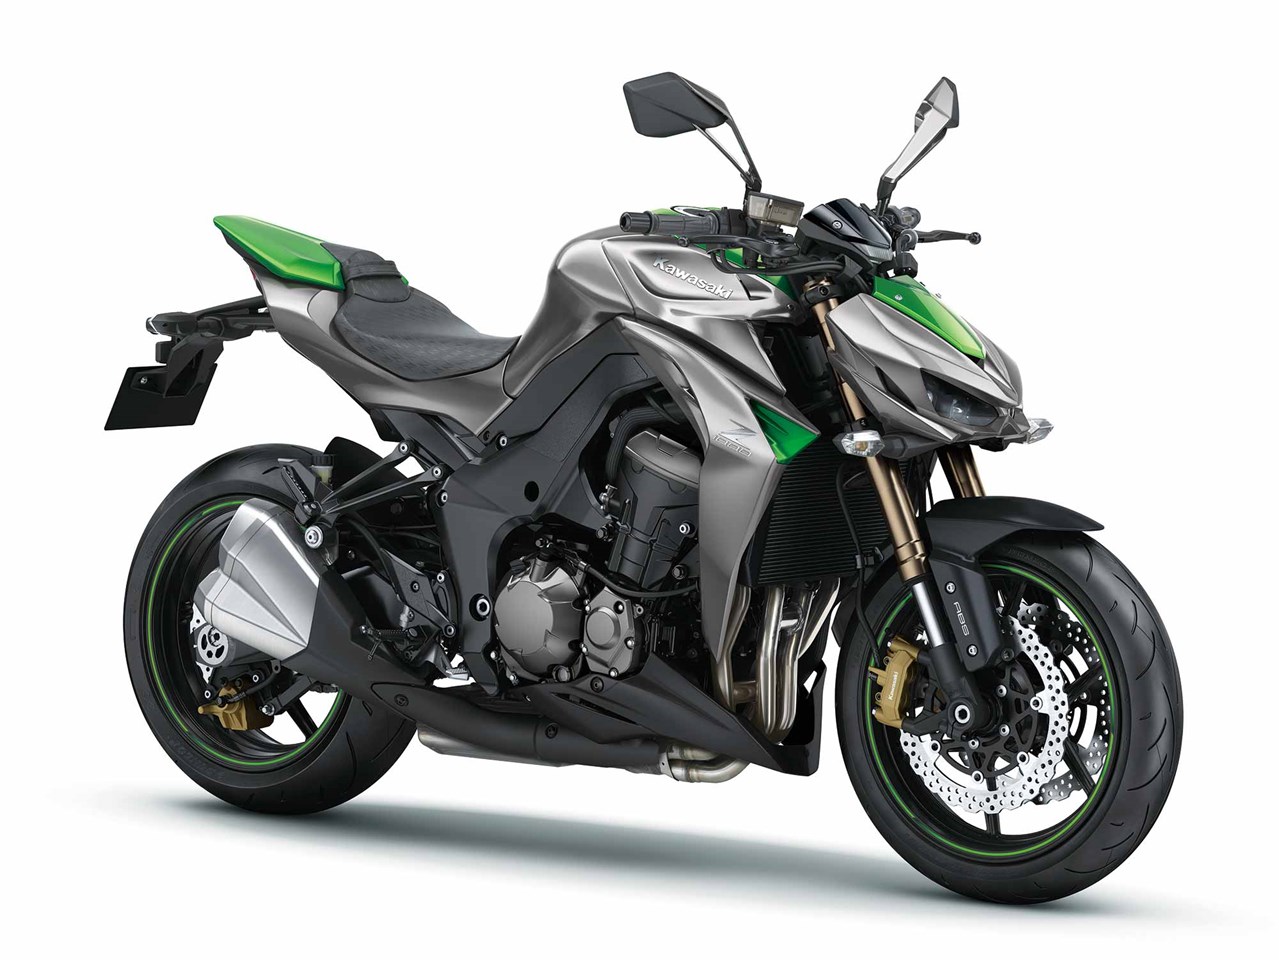 Kawasaki Z1000 (2014-on) Review, Speed, Specs & Prices